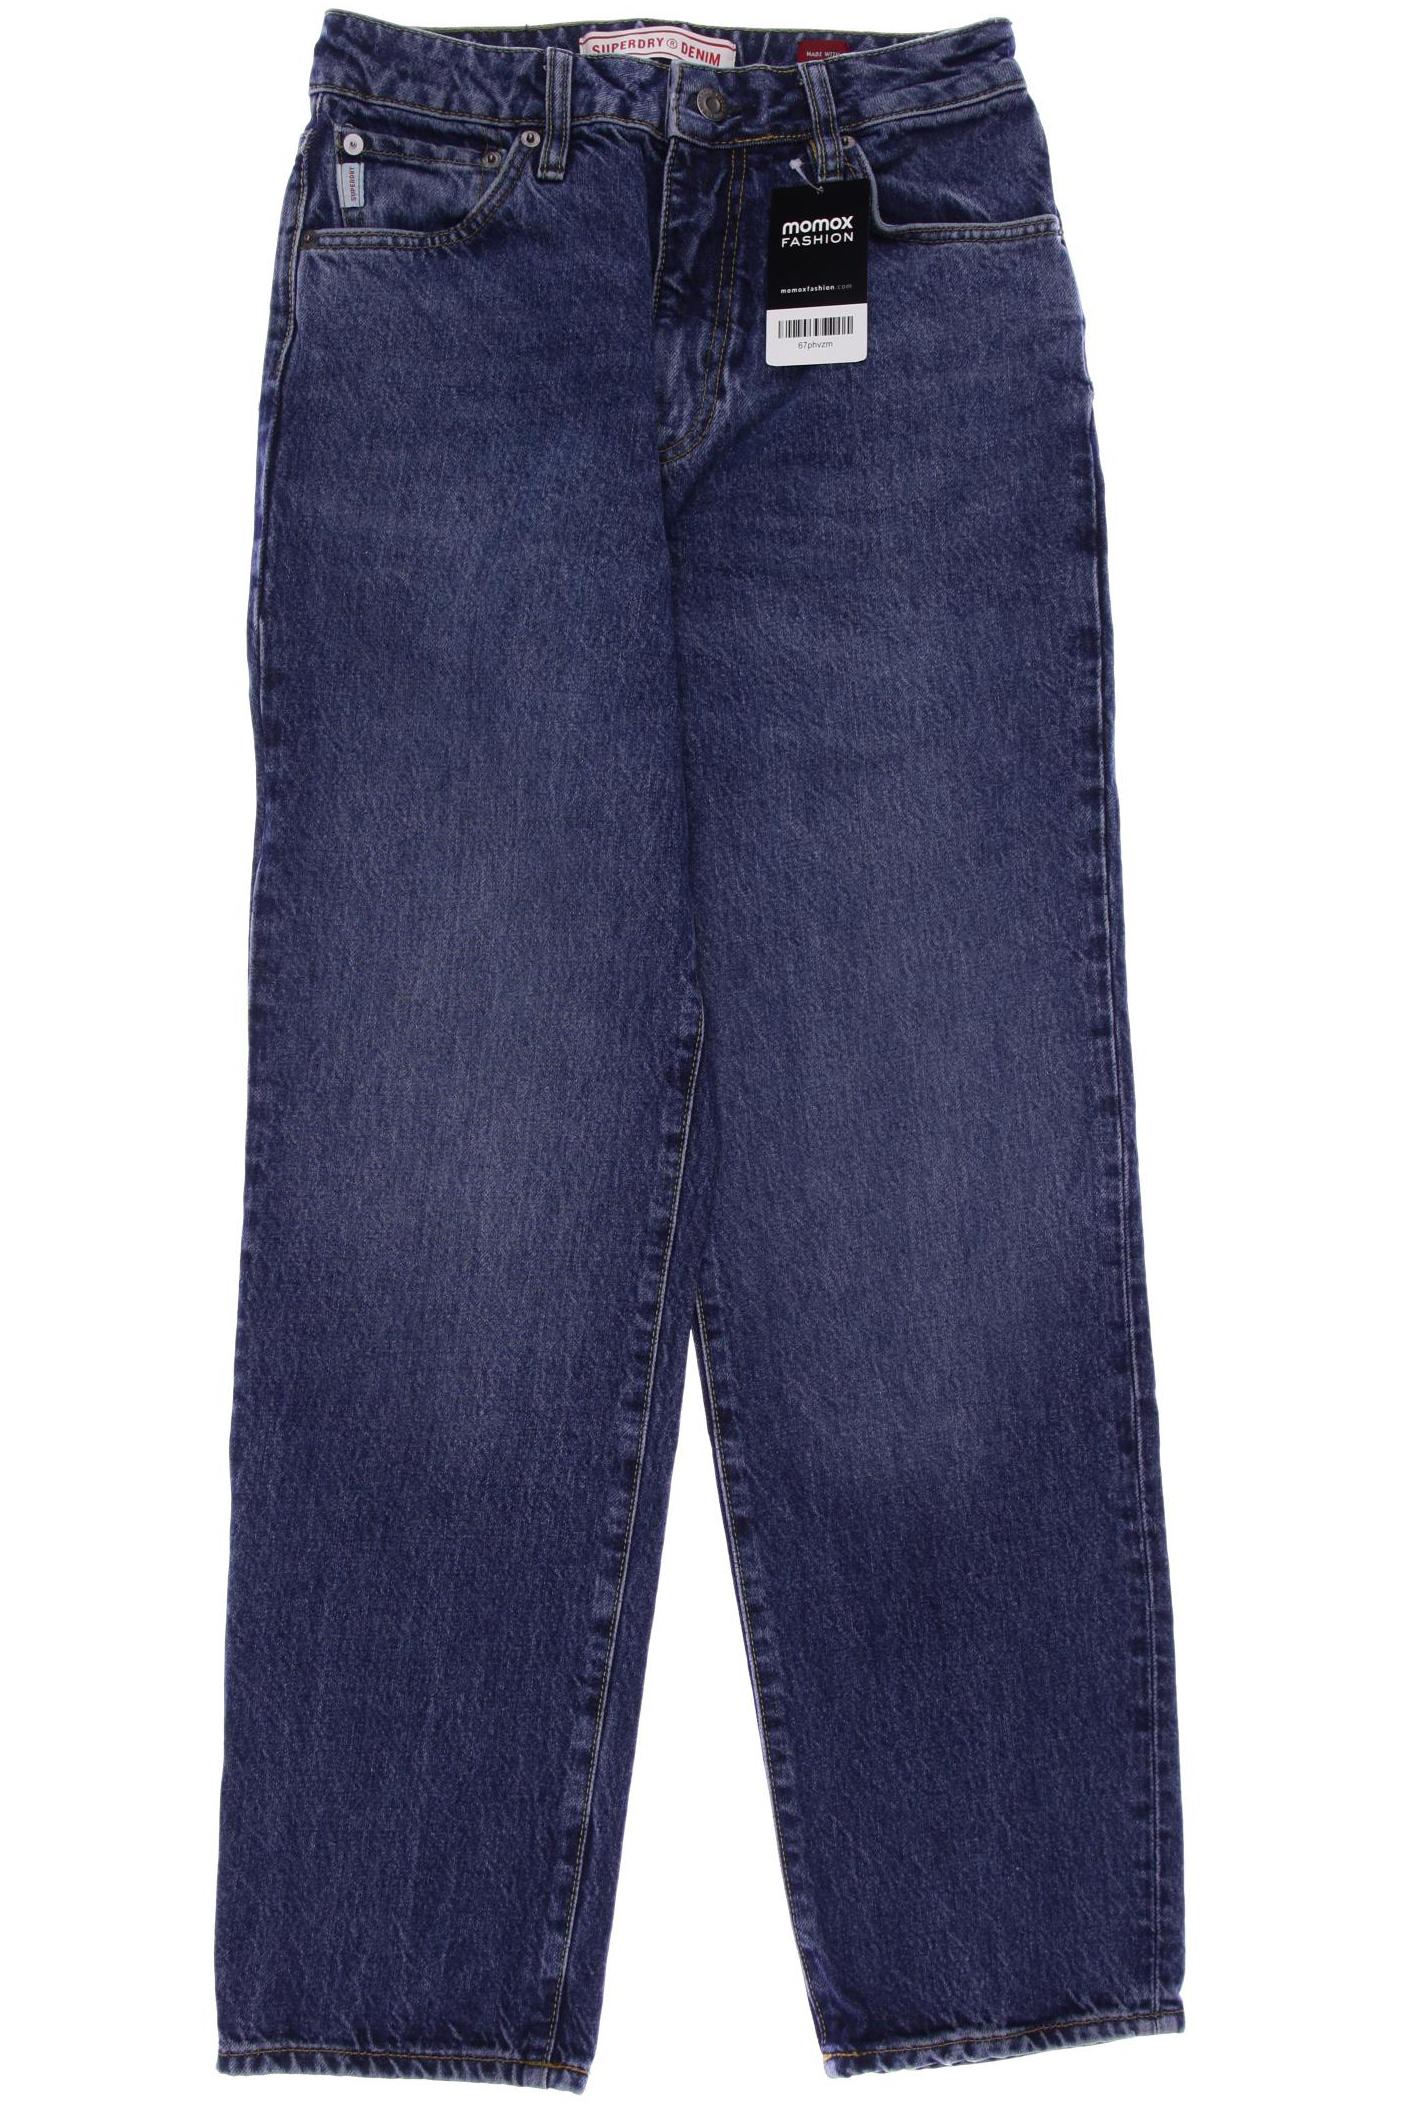 Superdry Damen Jeans, blau, Gr. 38 von Superdry